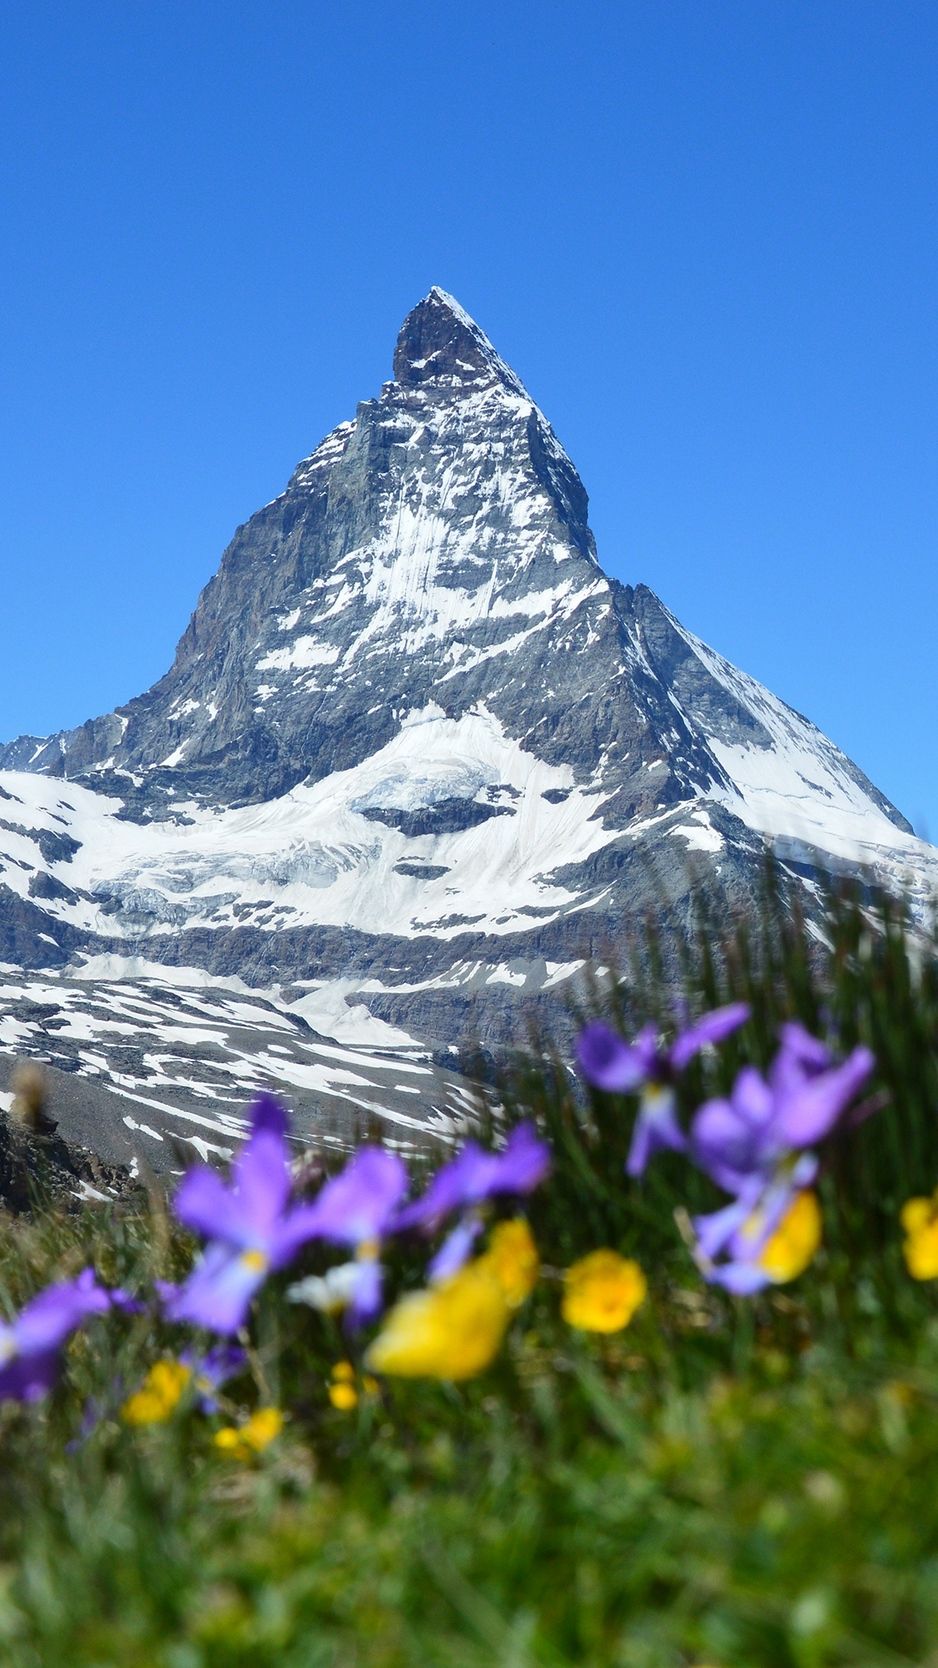 عکس استوک تماشایی گل های خوشگل در دامنه کوه سوئیس 